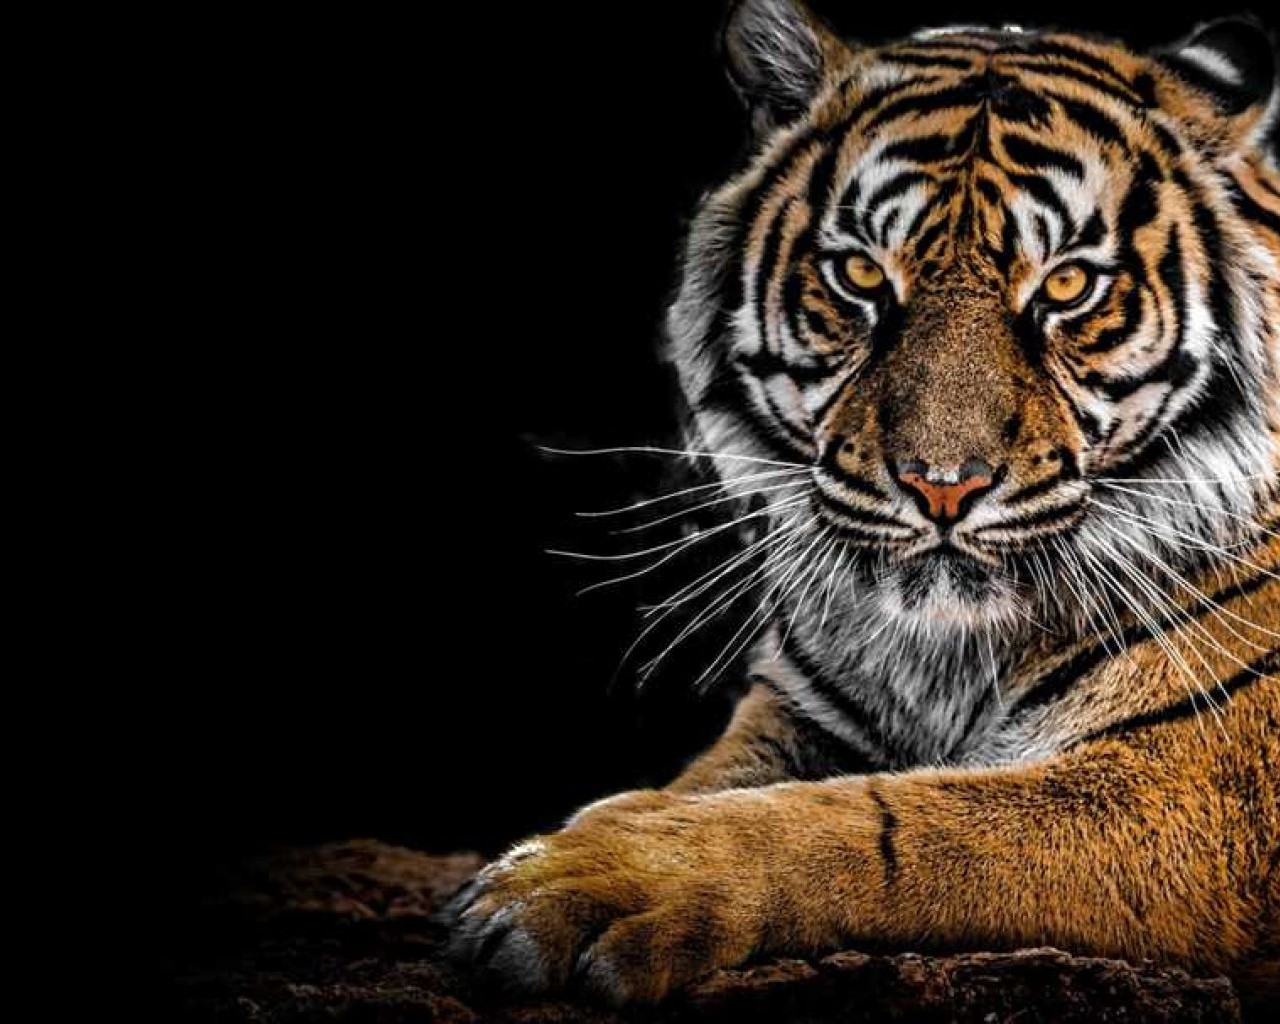 История и образ тигра - символ силы и красоты в животном мире